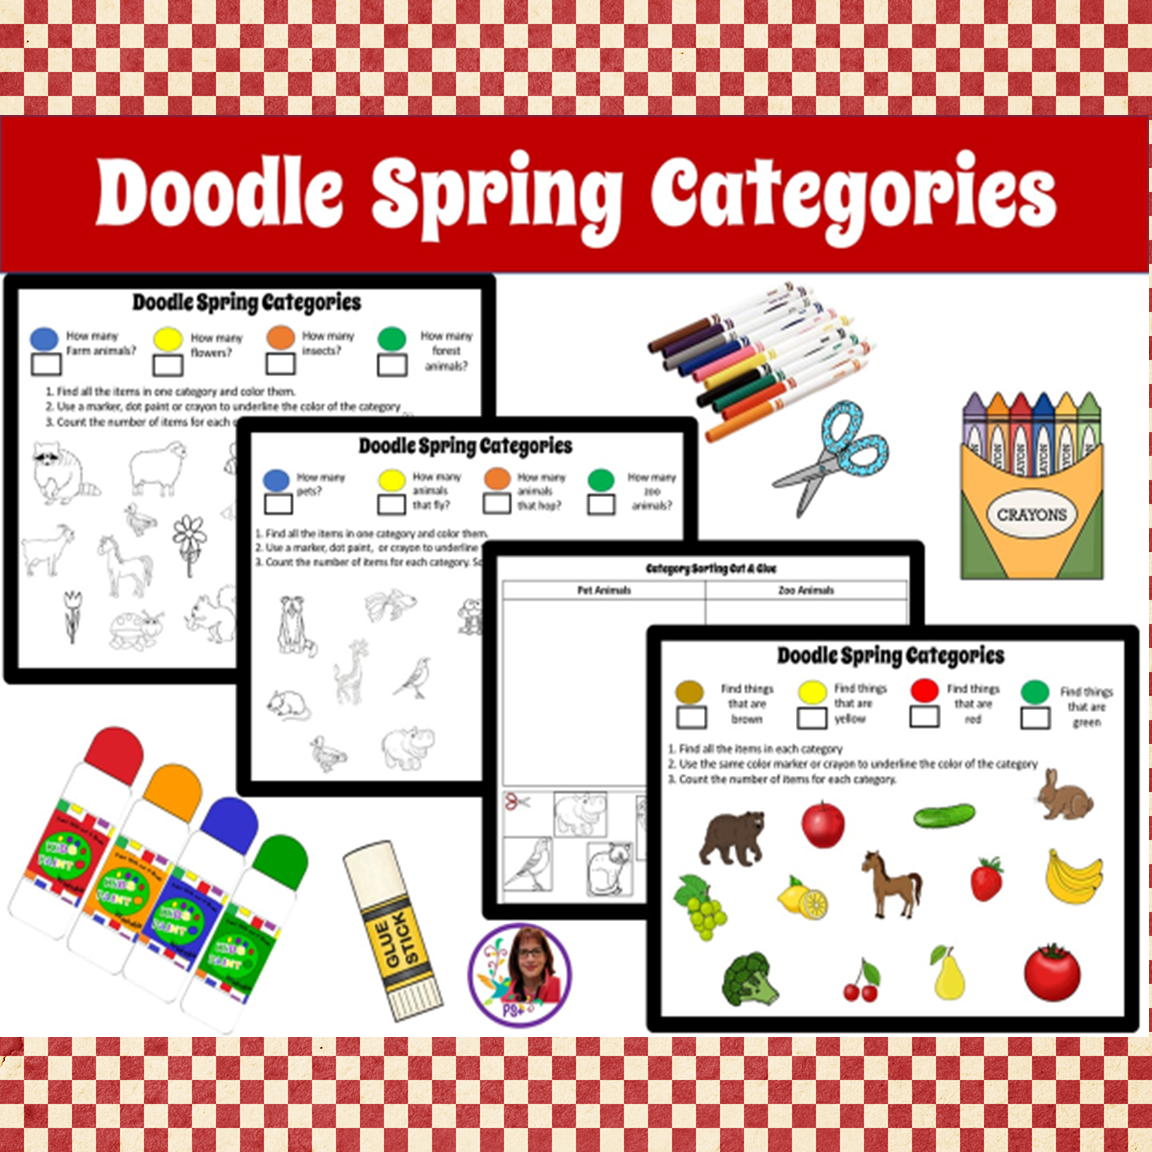 Doodle Spring Categories.png